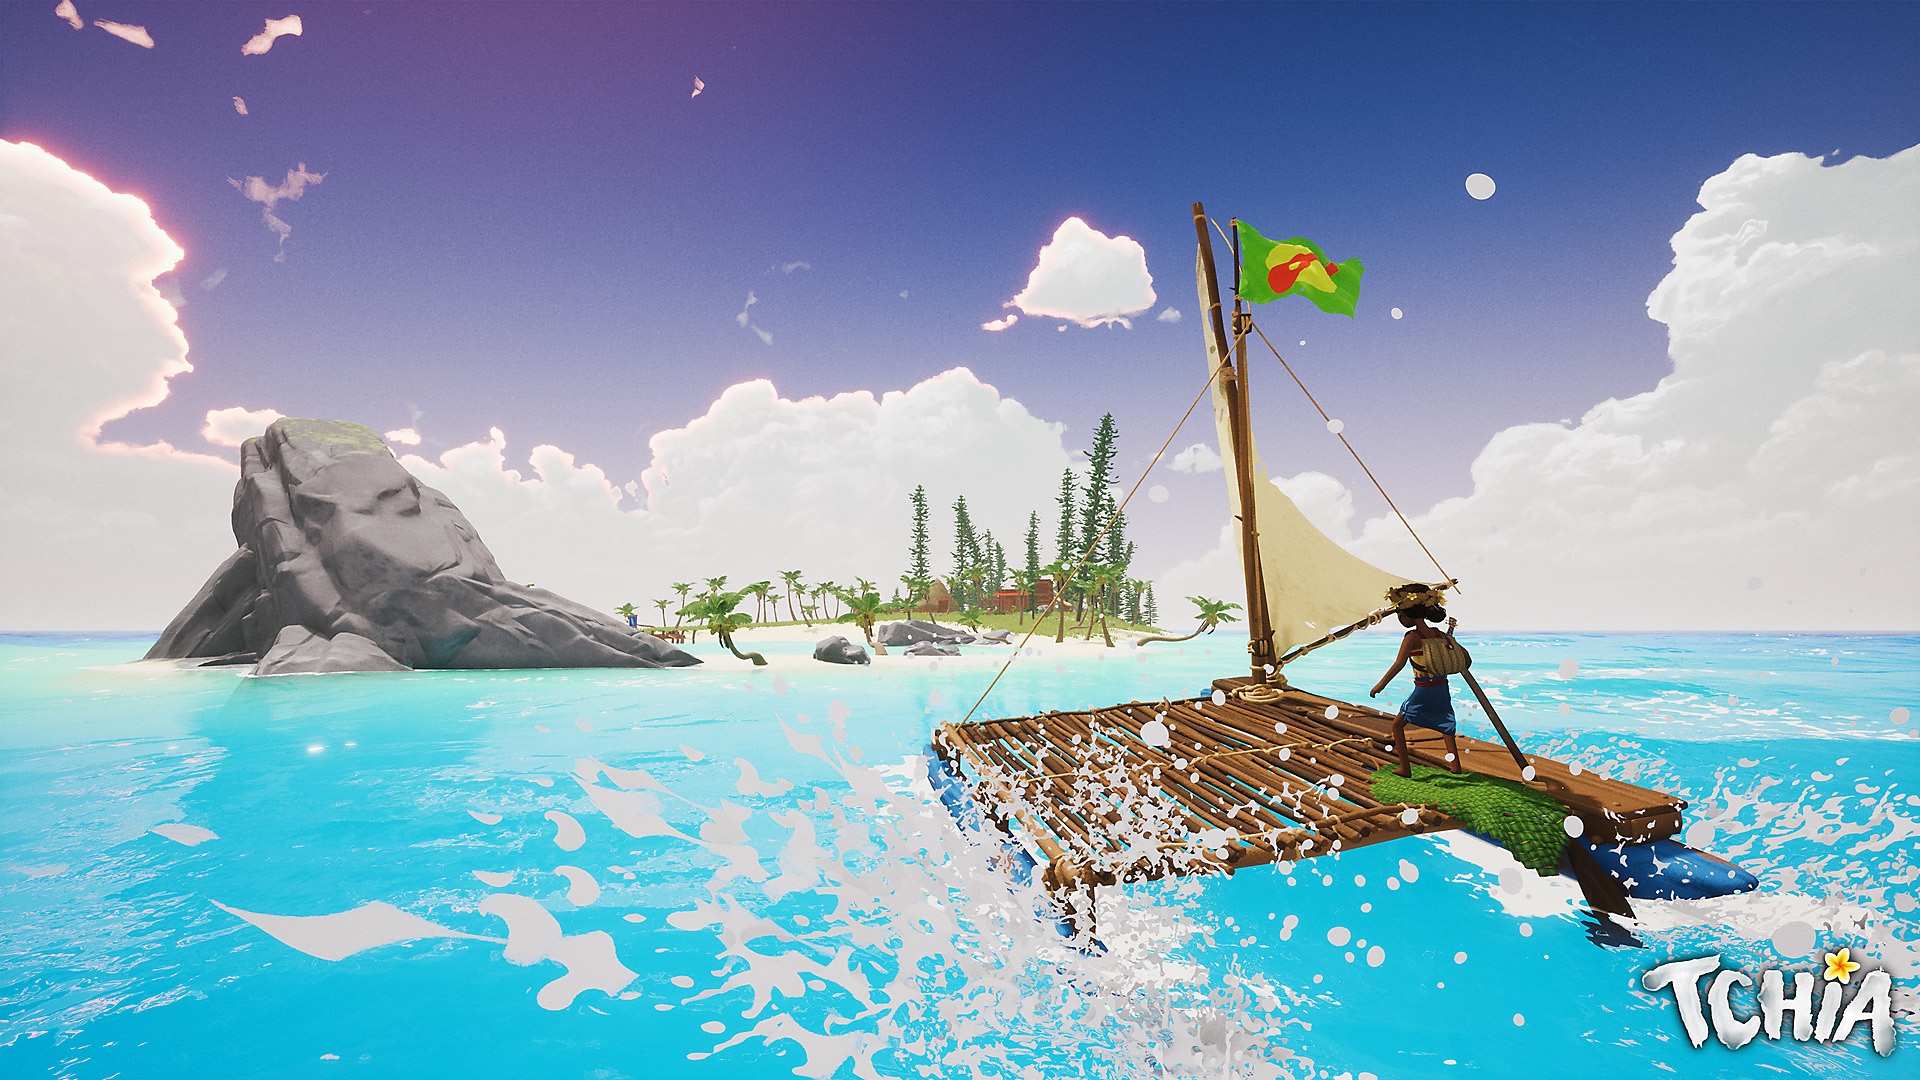 Tchia-screenshot van het hoofdpersonage dat op een vlot naar een eiland vaart